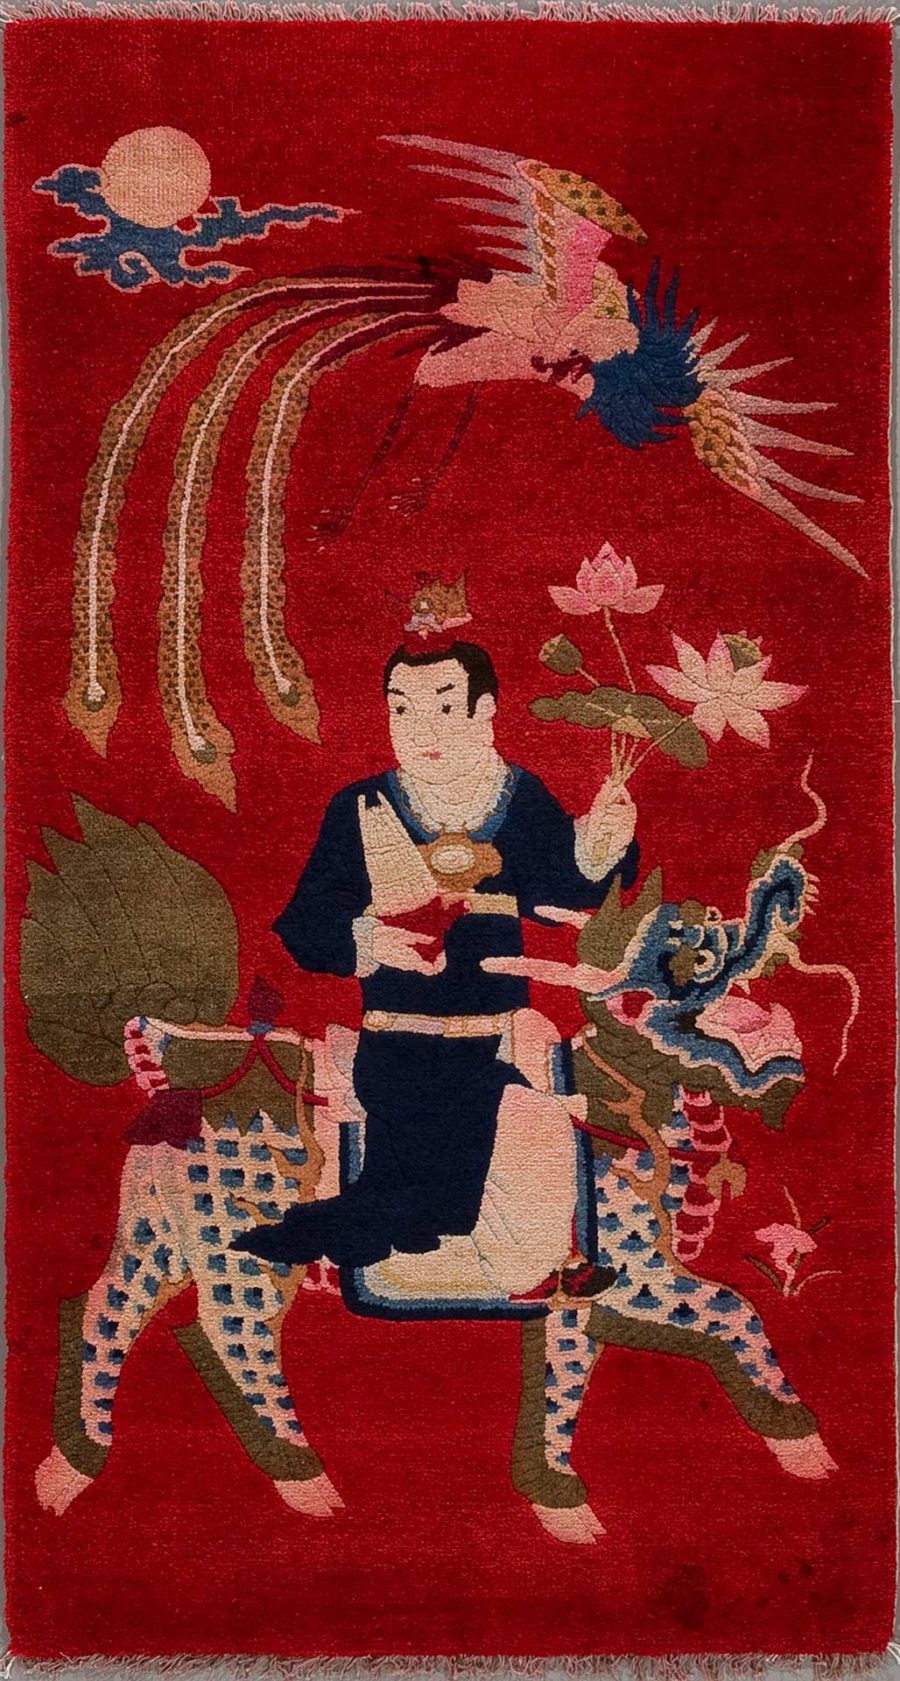 Alt-Text: Traditioneller japanischer Teppich mit Darstellung eines Samurai bei der Jagd, umgeben von Motiven wie einem Drachen, einer Sonne mit Wolken und fliegenden Kranichen auf rotem Hintergrund.